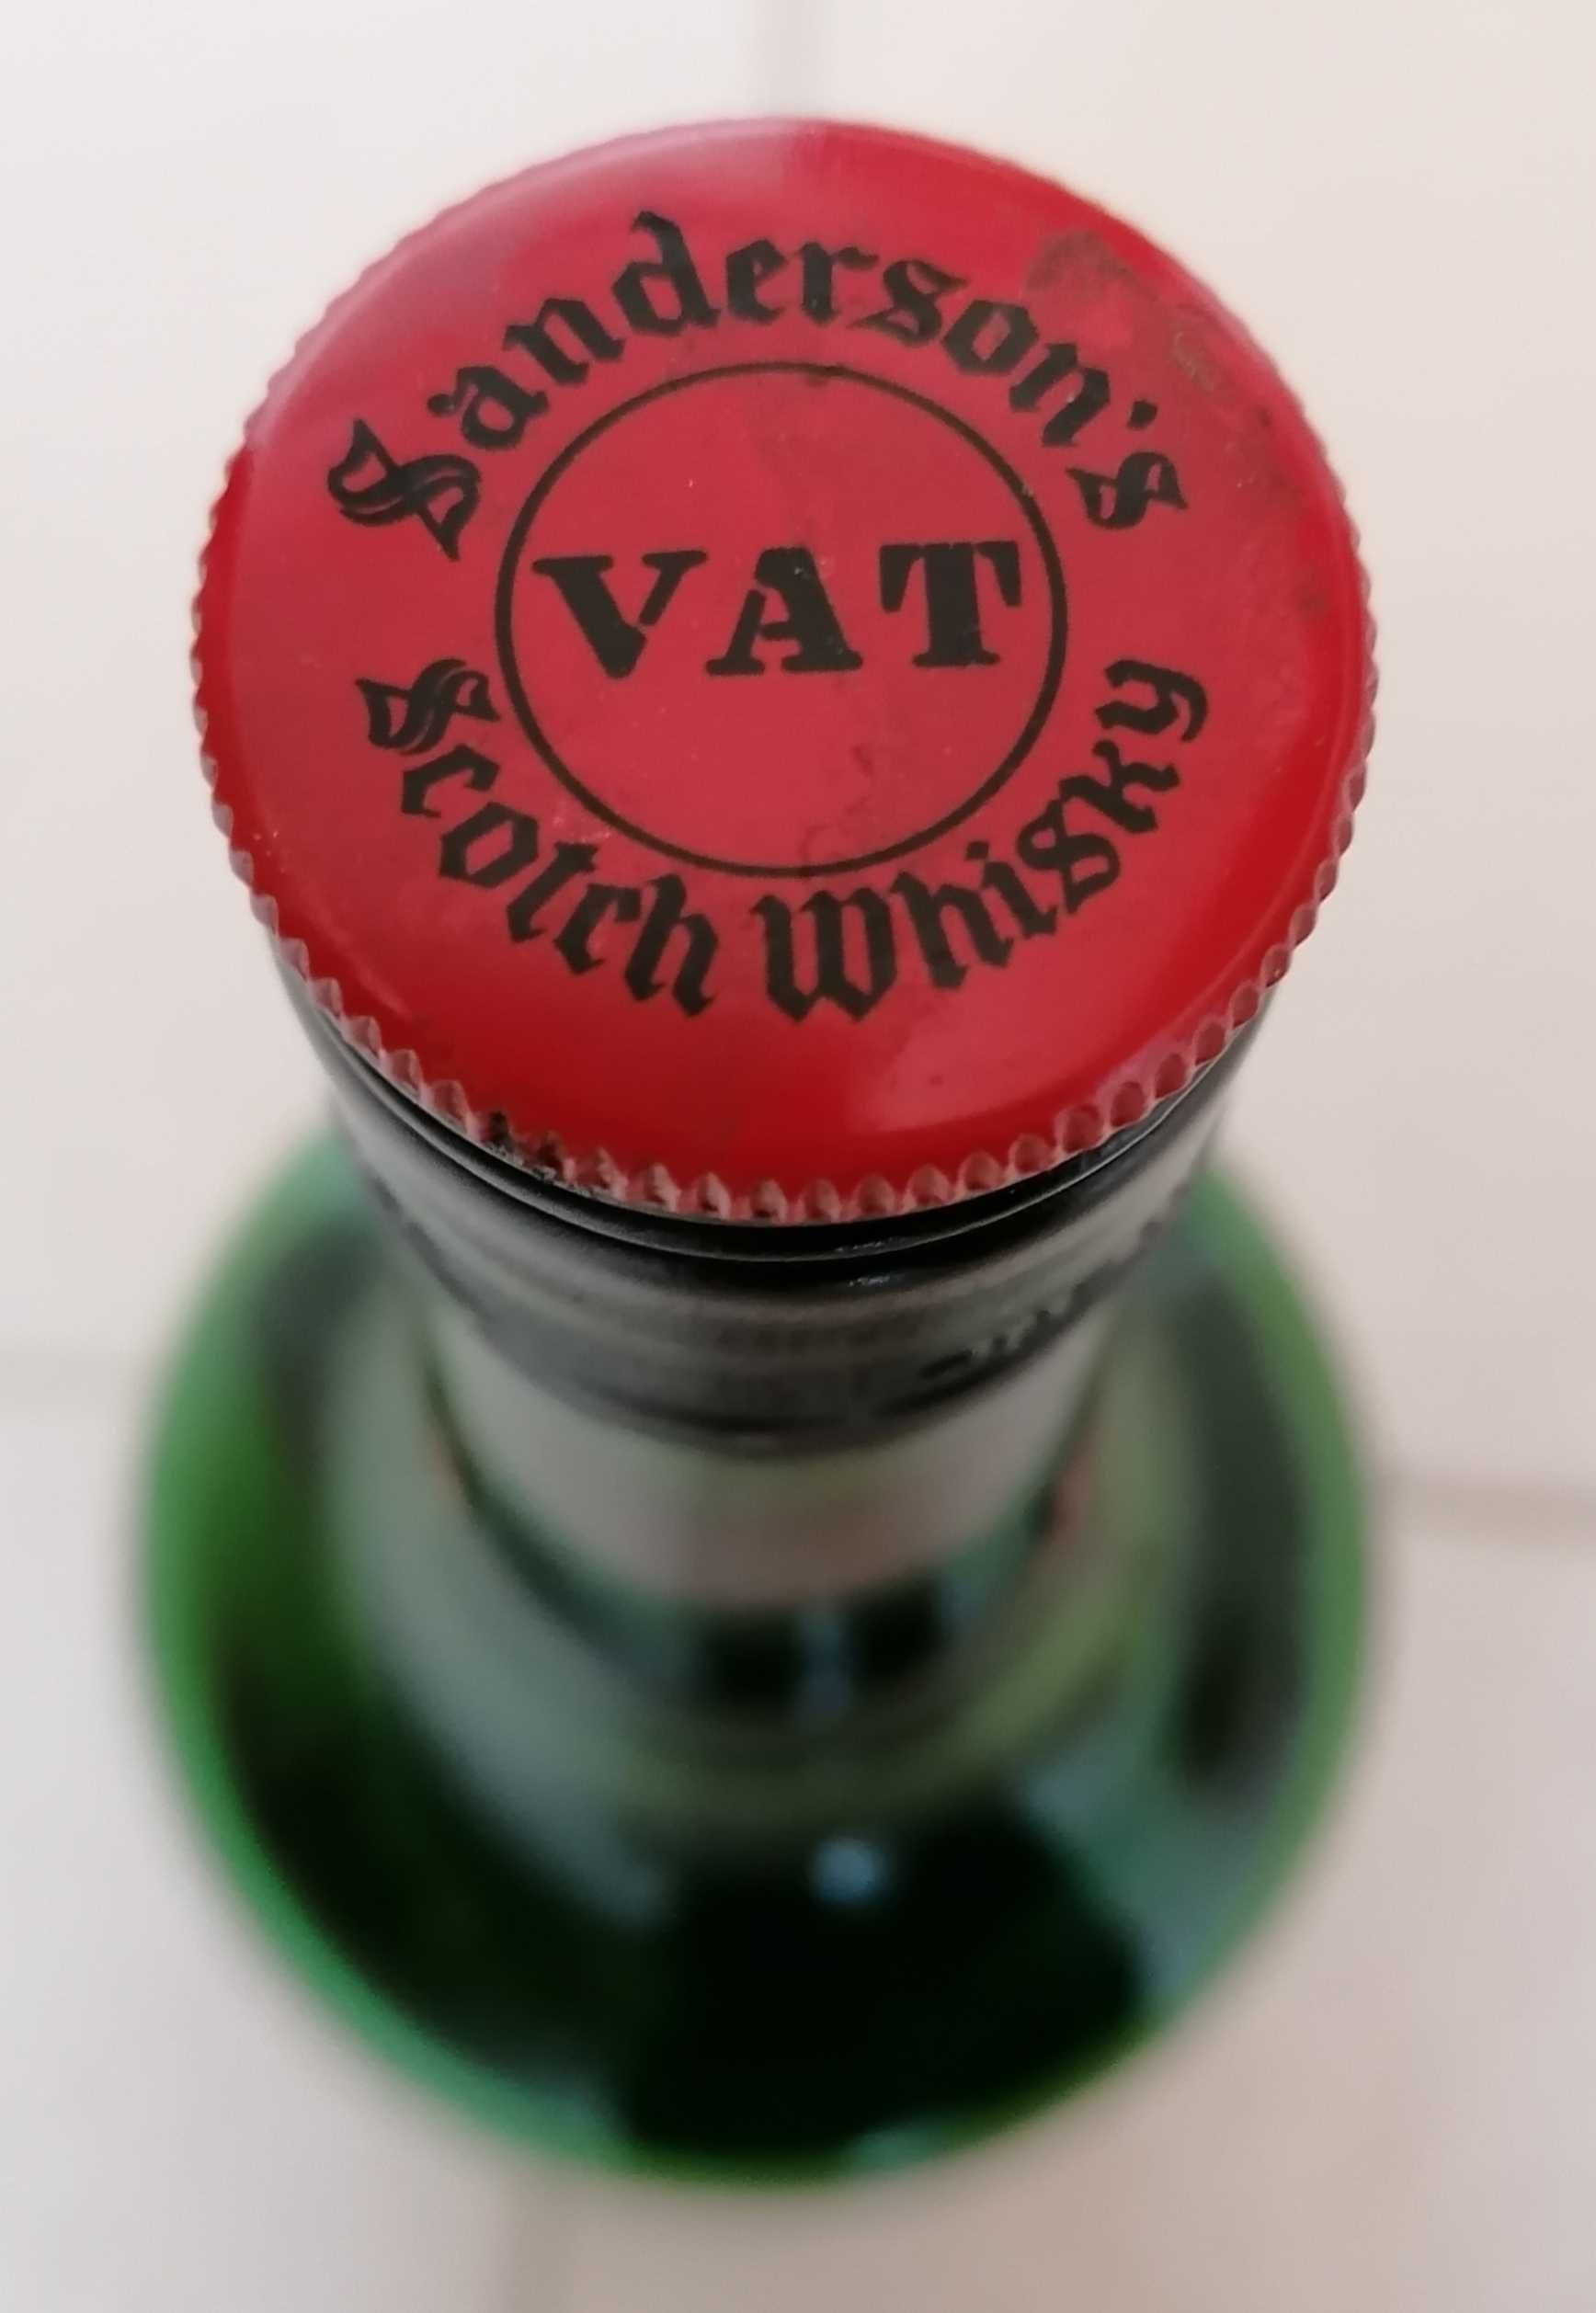 Garrafa de whisky VAT69